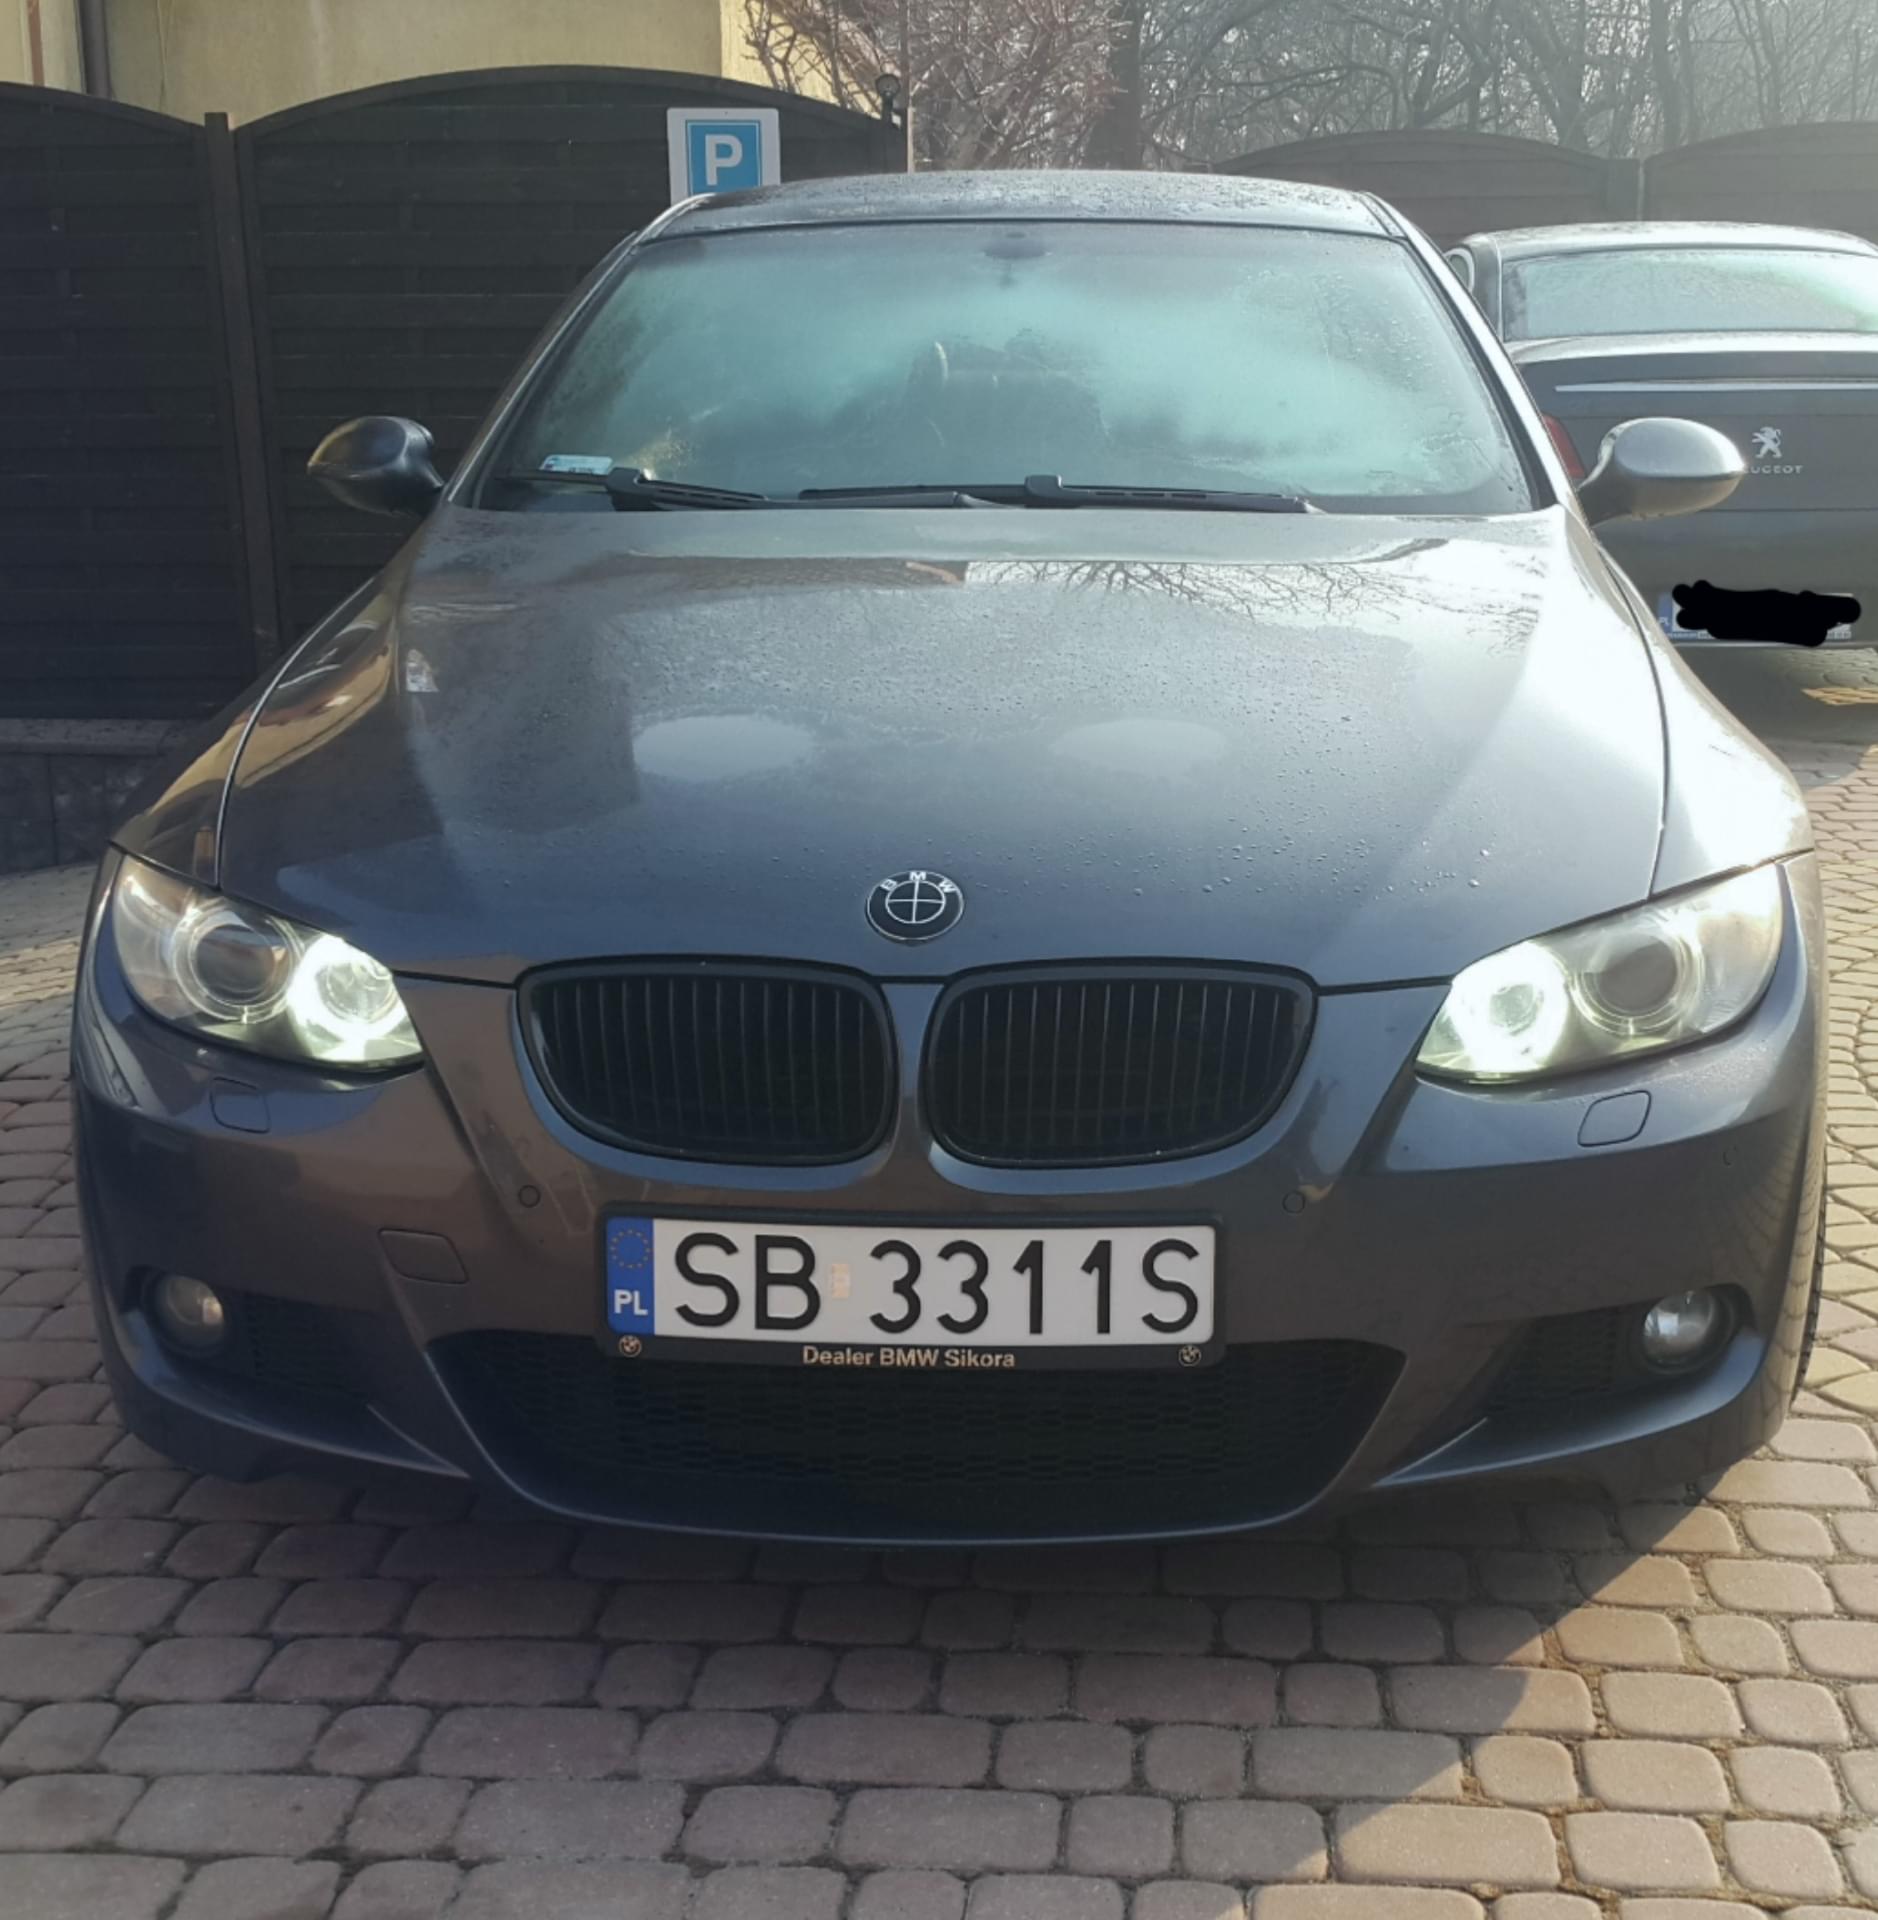 BMWklub.pl • Zobacz temat jakie zarówki led angel eyes